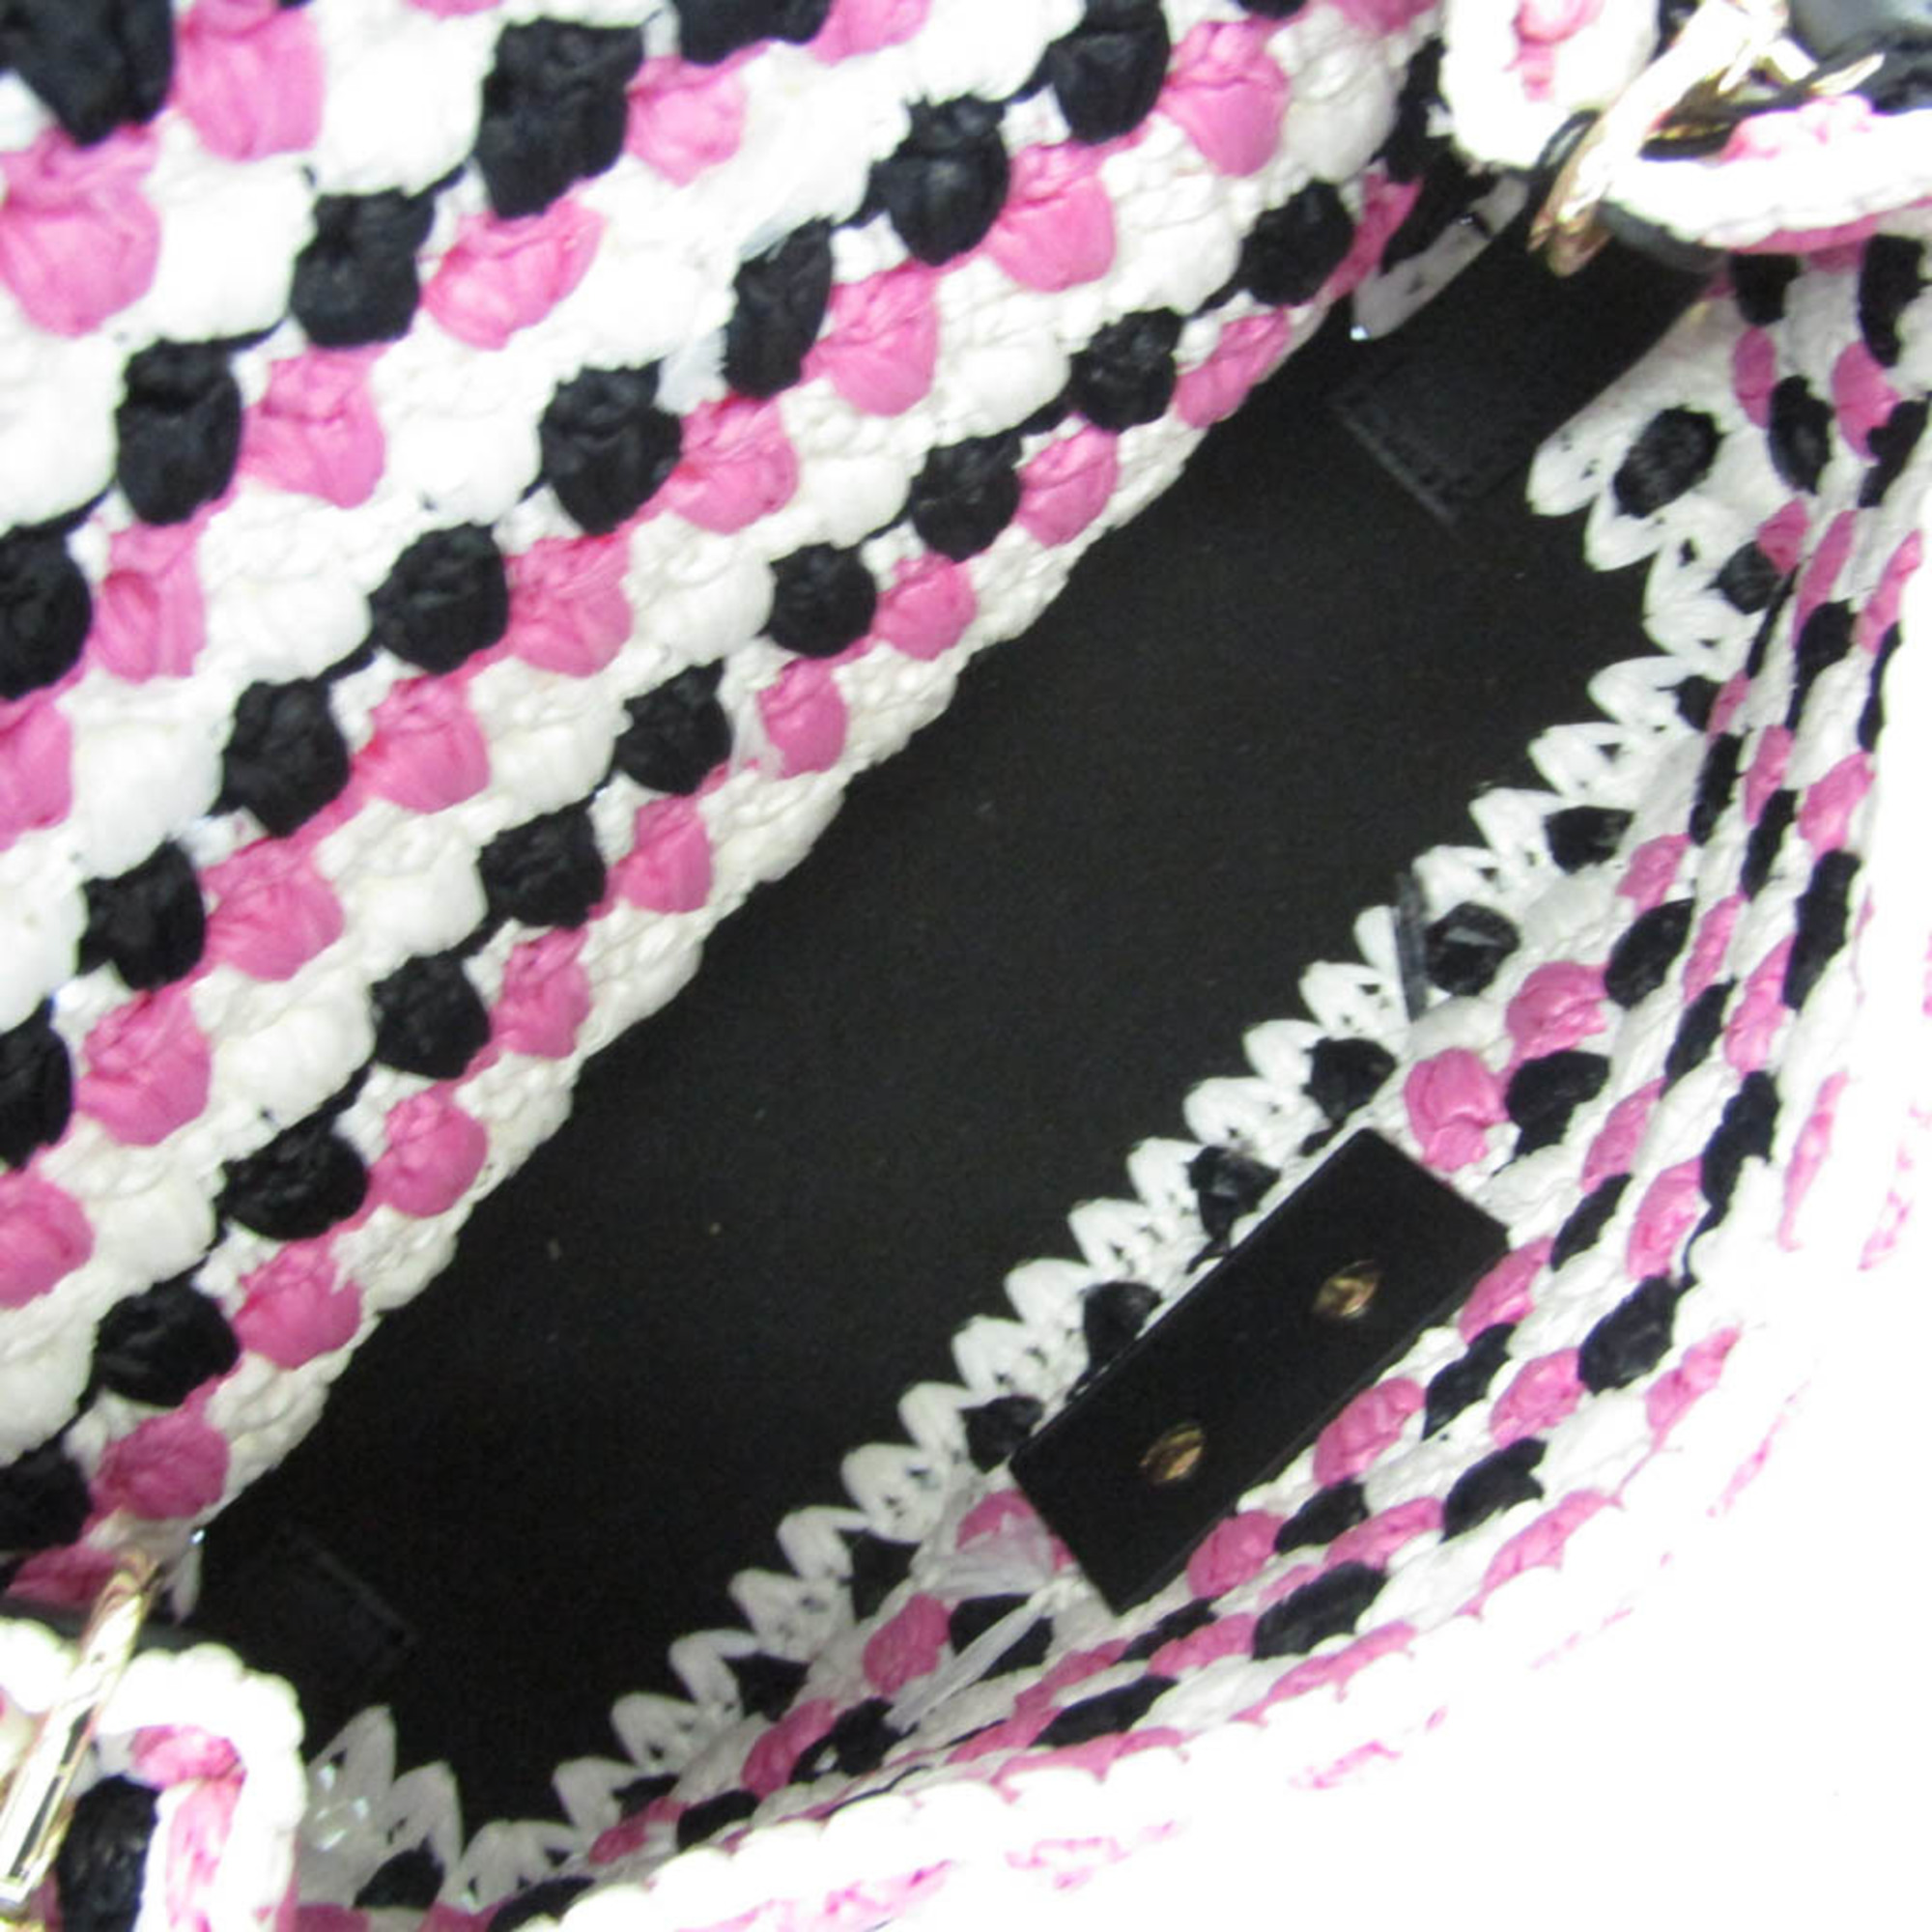 Furla 264630 Women's Leather,Polypropylene Shoulder Bag Black,Pink,White